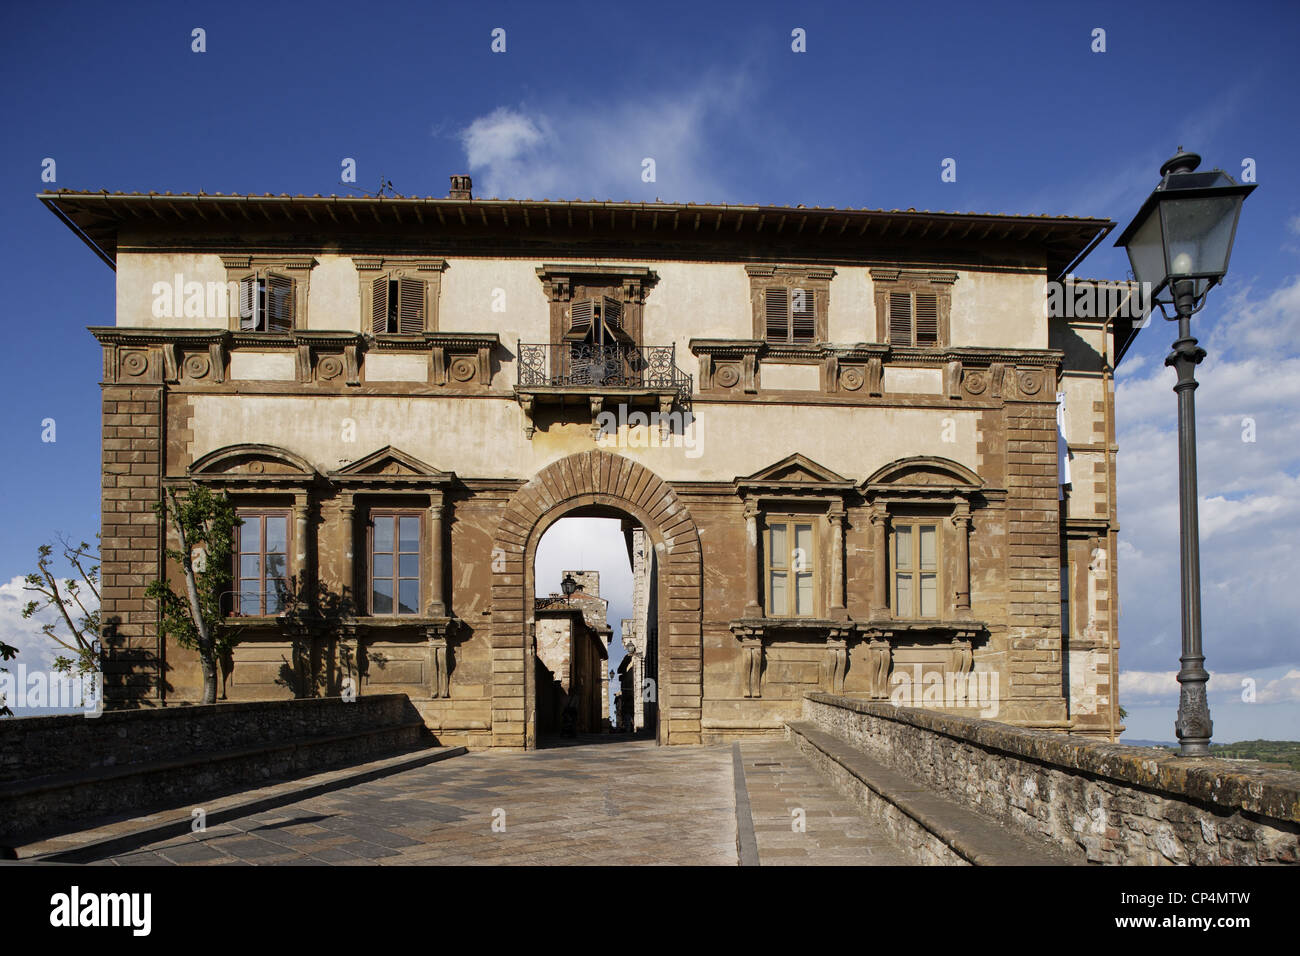 Campana Palace. Italy, Tuscany Region, Colle Val d'Elsa (Si). Stock Photo